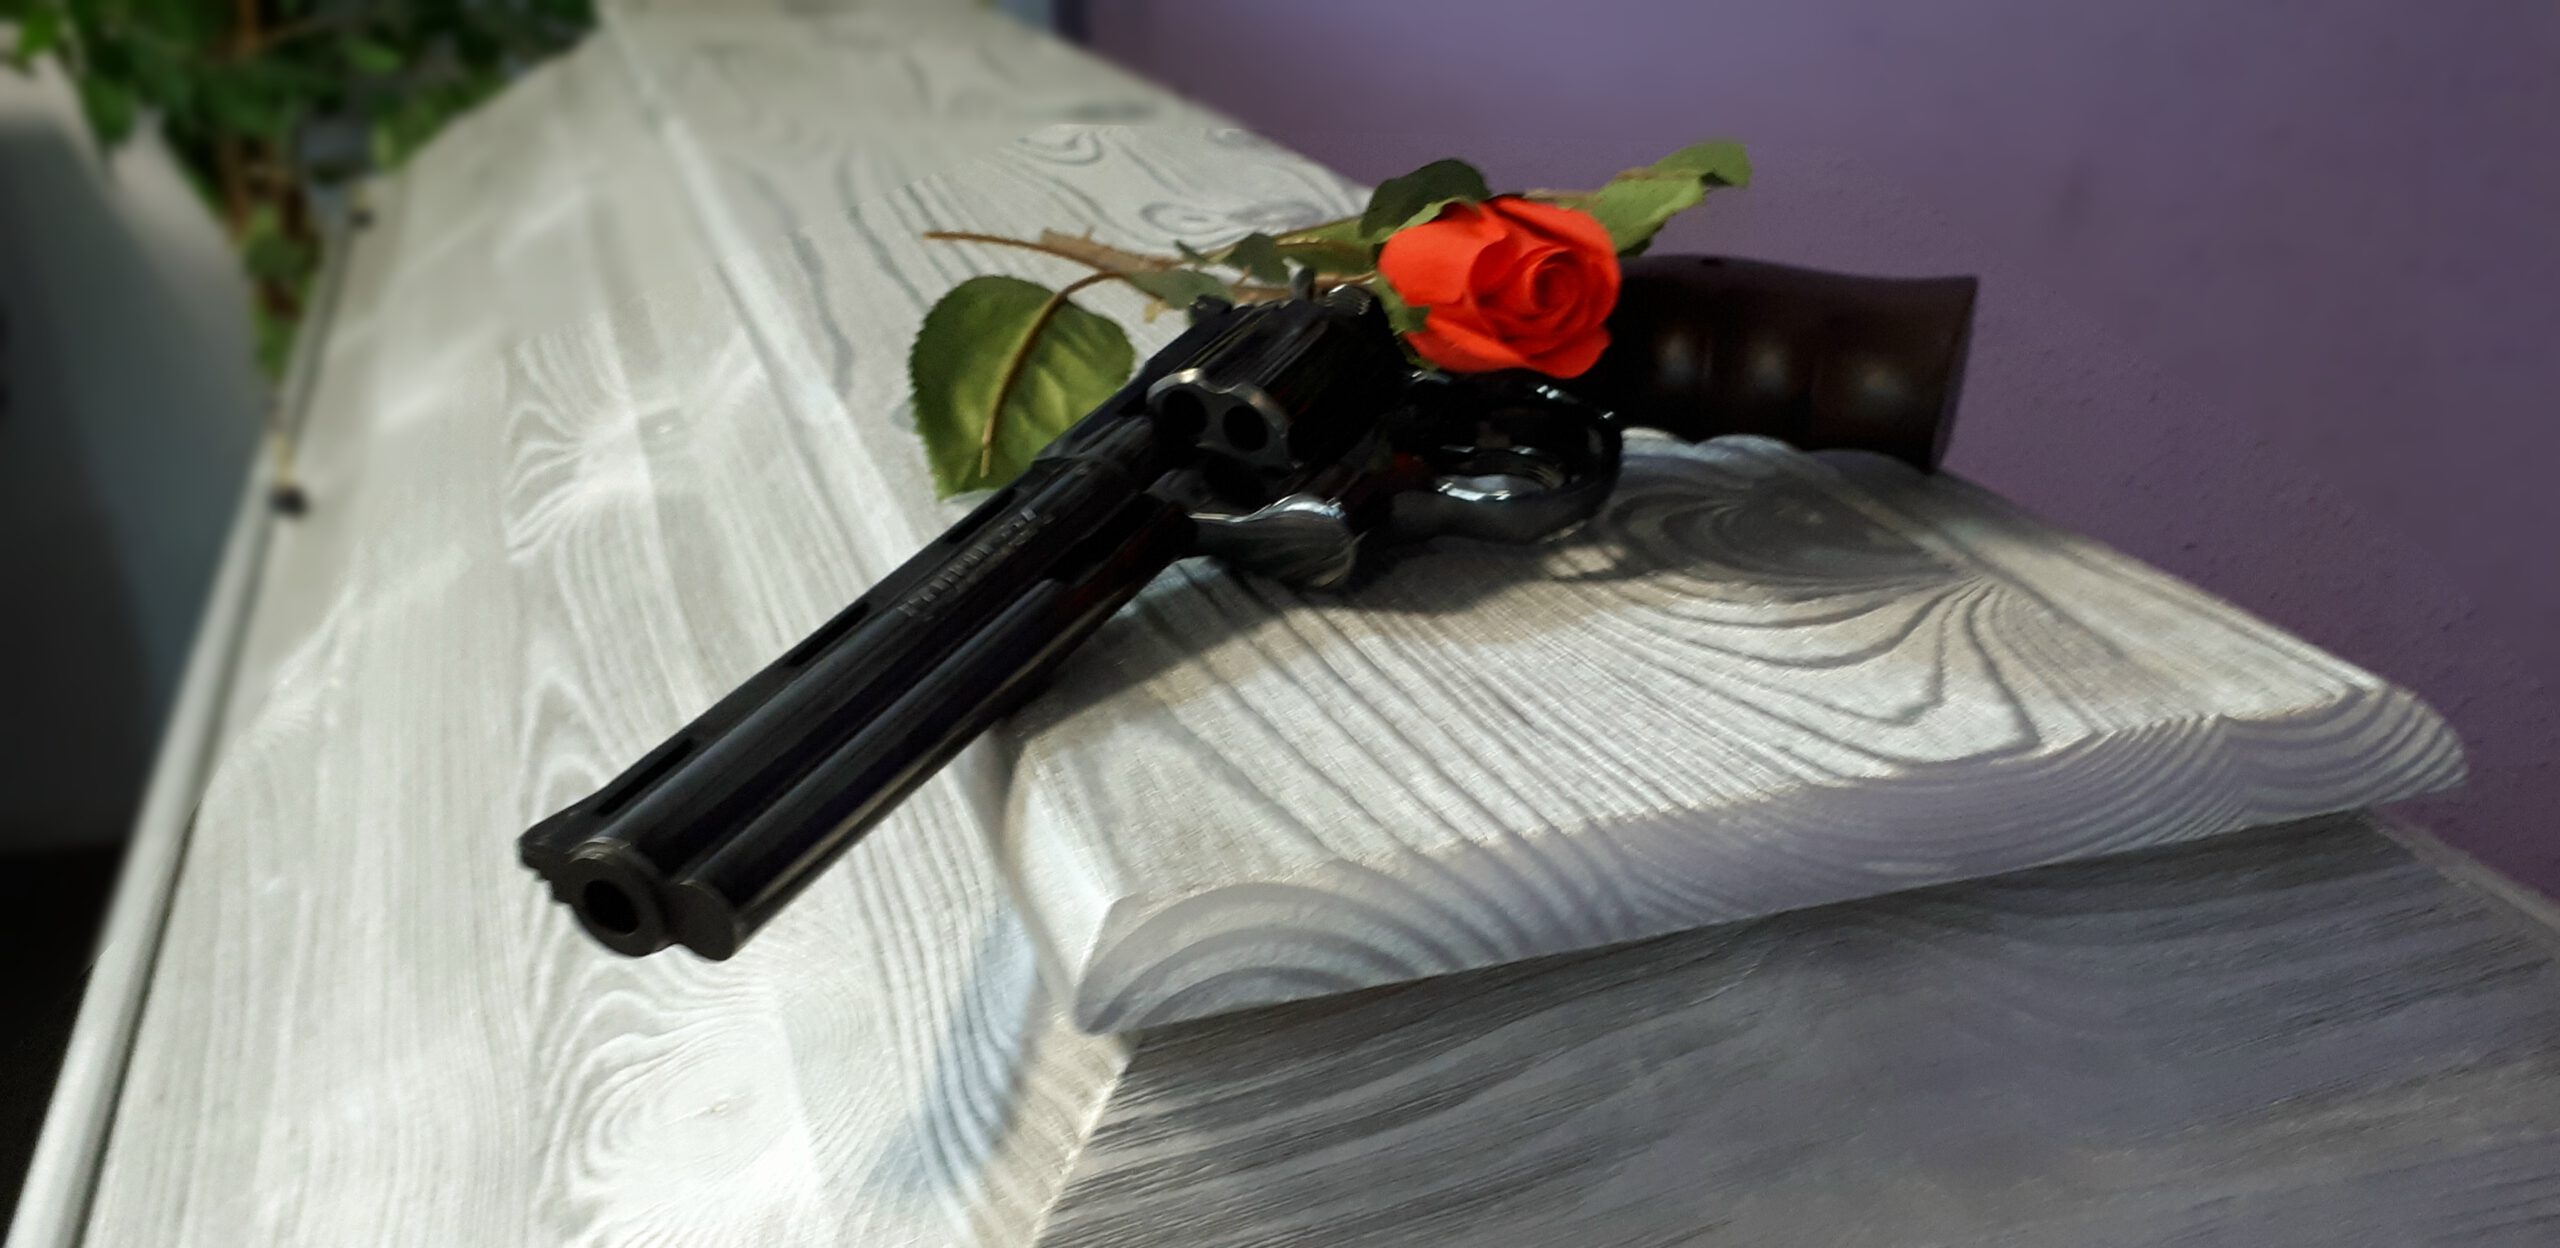 Kiefernsarg silber mit schwarzem Colt und roter Rose